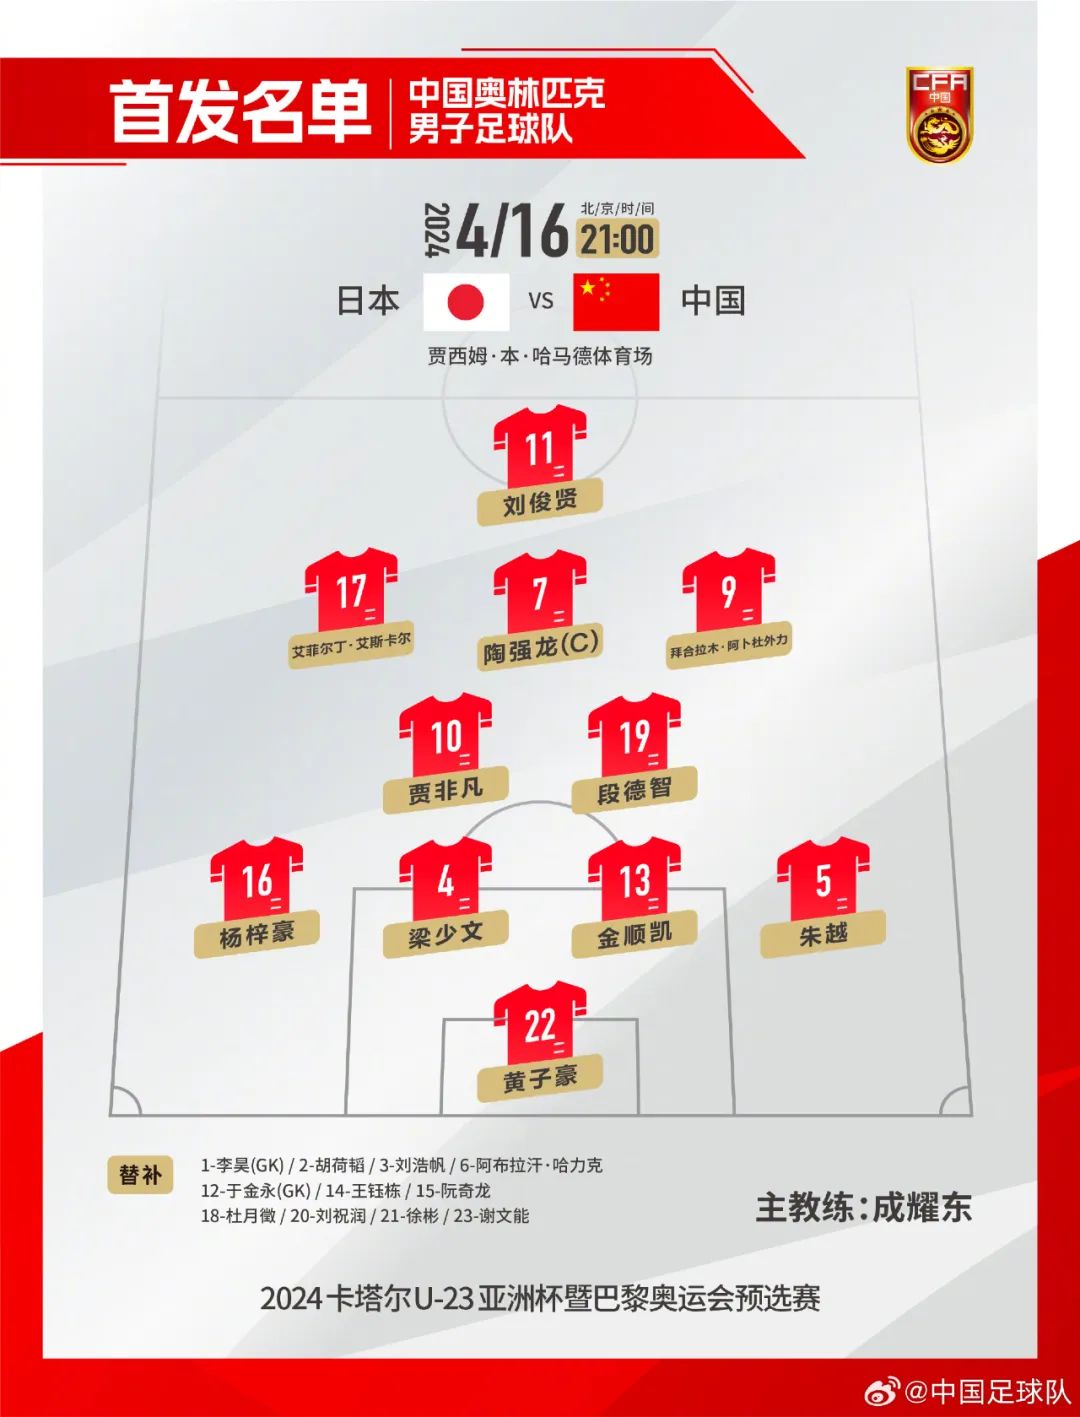 中国队首发阵容。图片来源：中国足球队